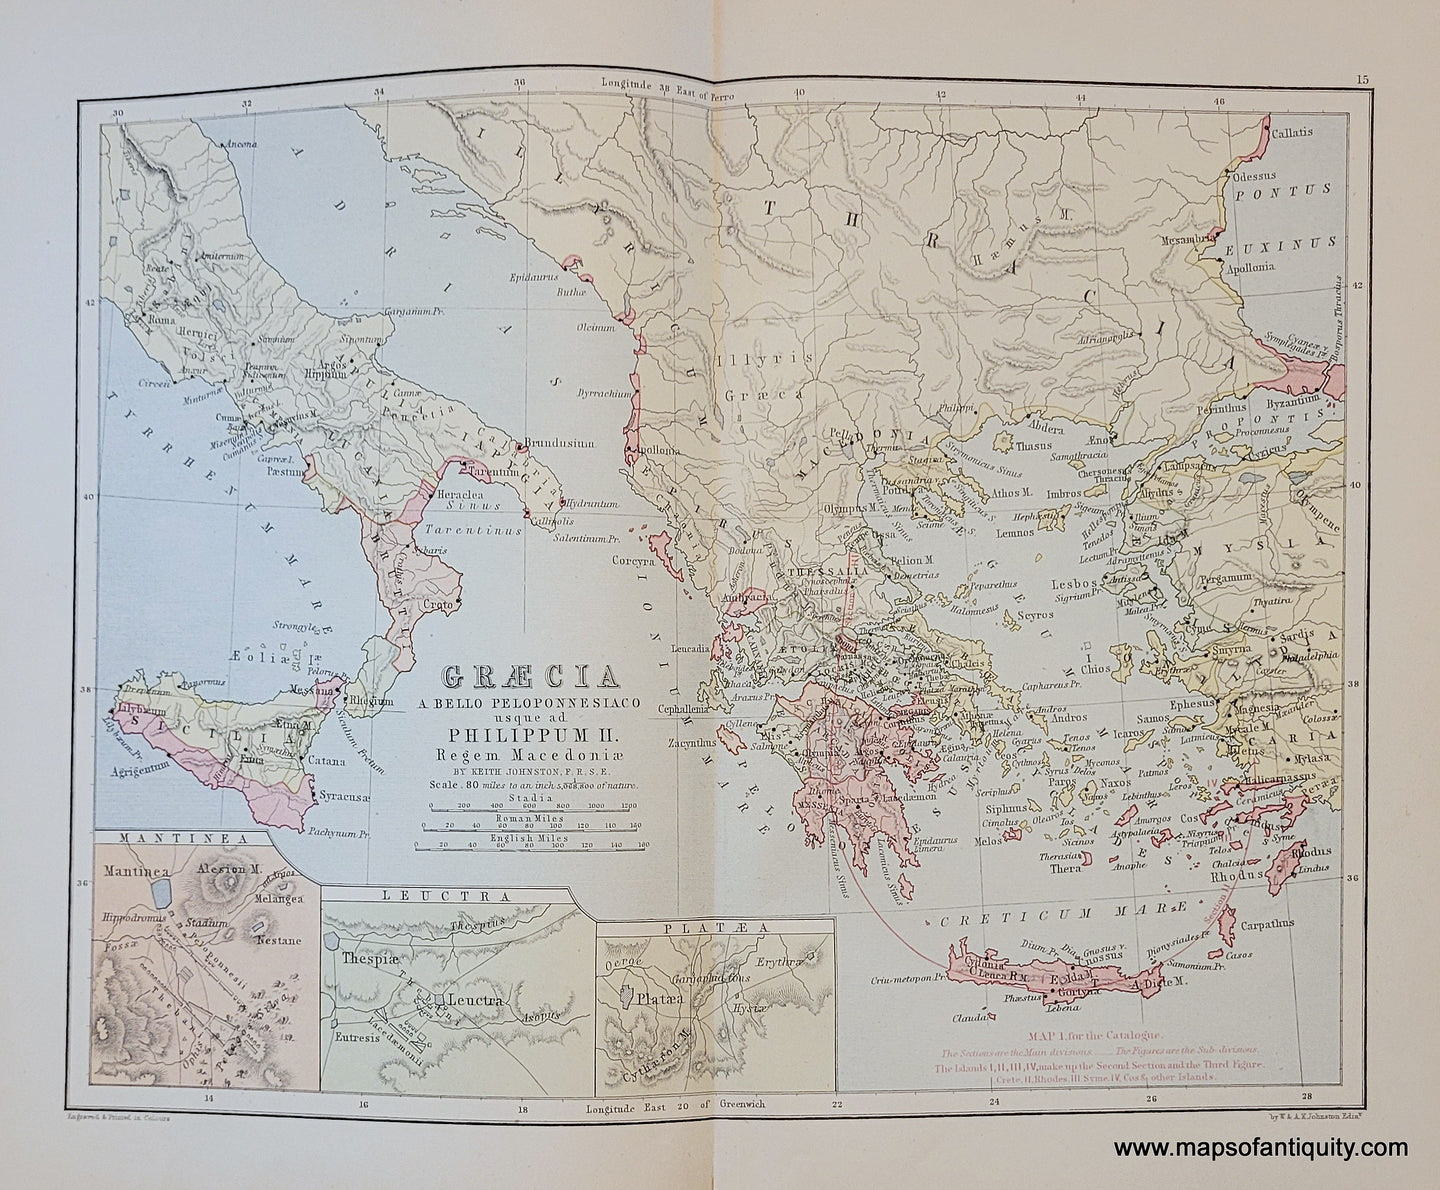 Genuine-Antique-Map-Graecia-a-Bello-Peloponnesiaco-usque-ad-Philippum-II-1910-Johnston-Maps-Of-Antiquity